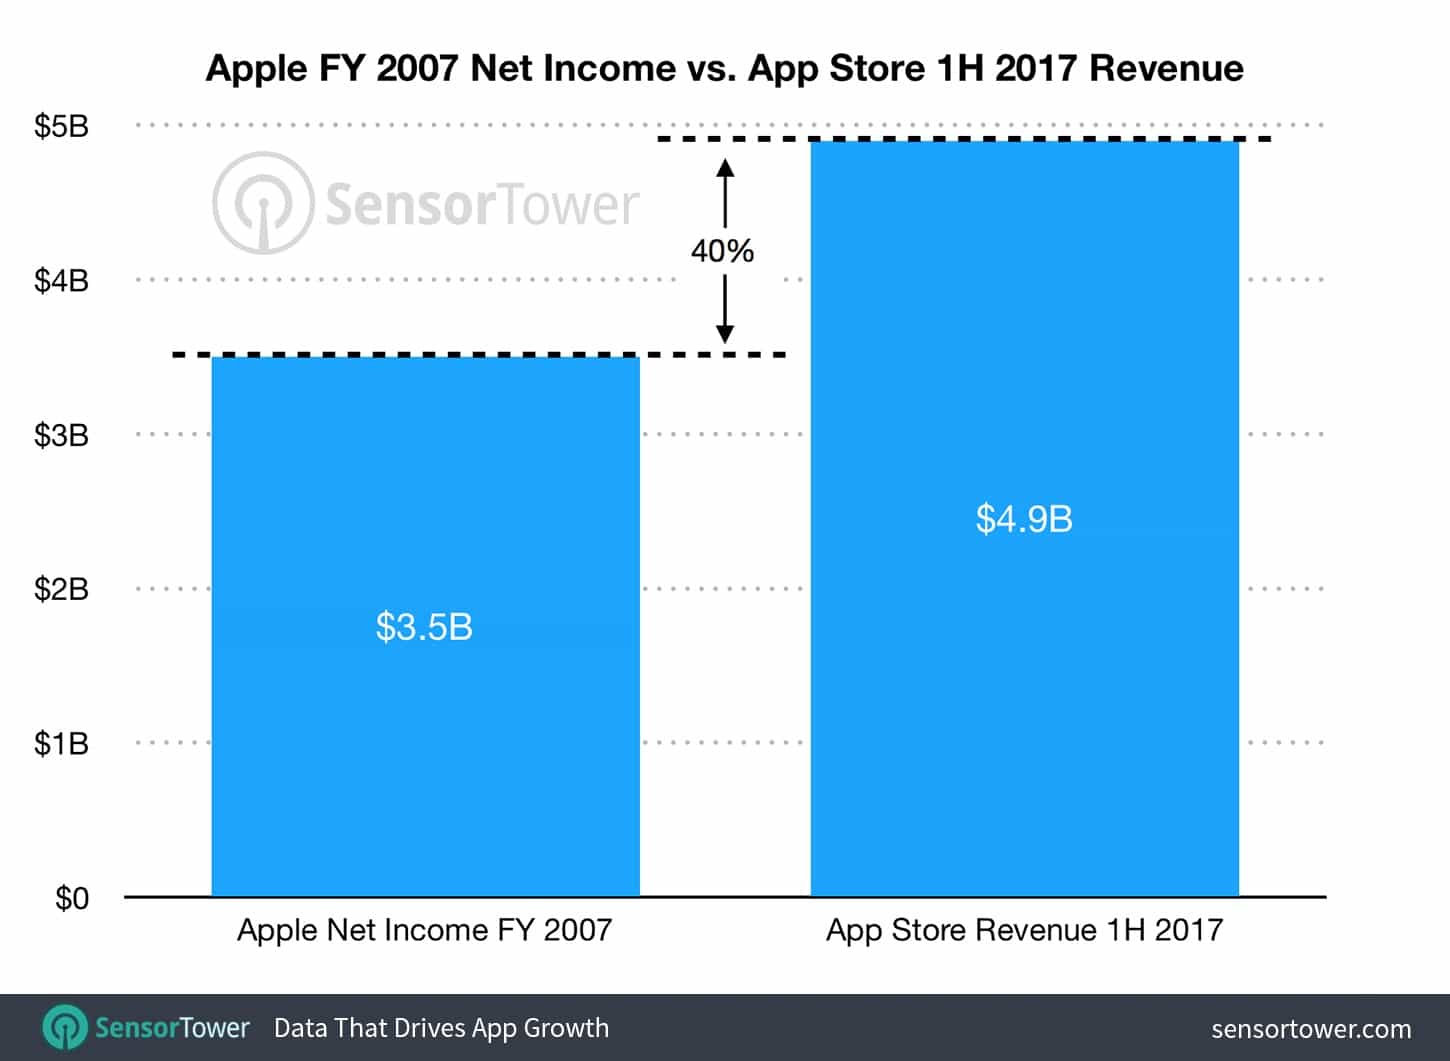 App Store revenue